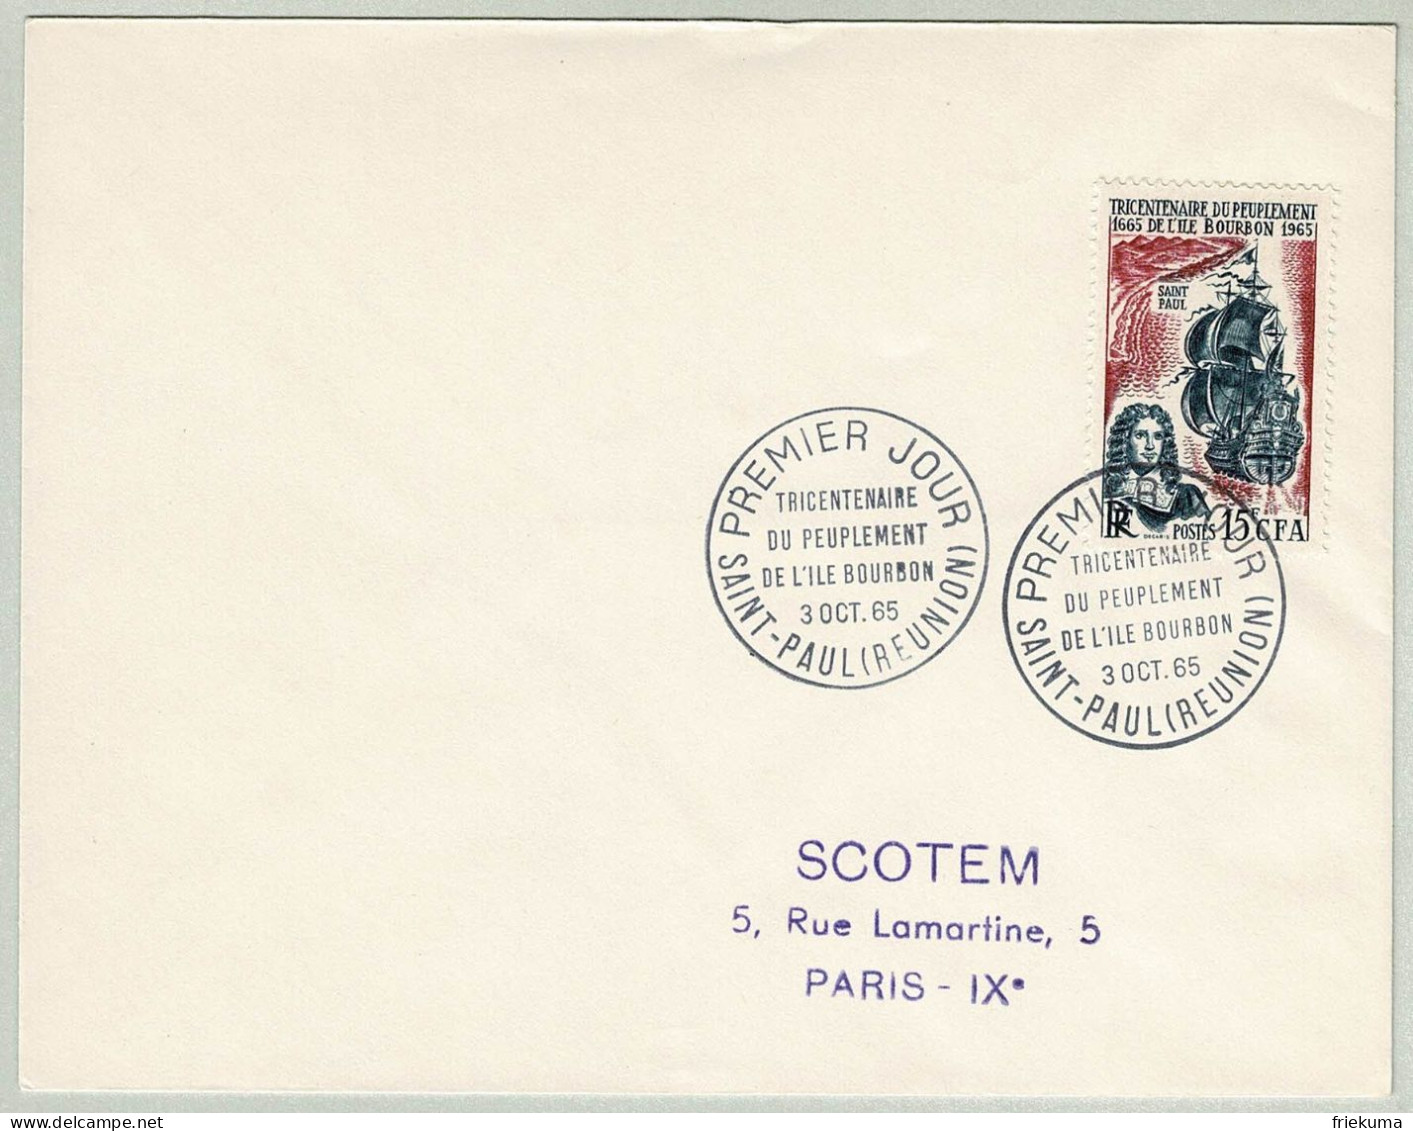 Frankreich / France 1965, Brief Ersttag Ile Bourbon / Réunion - Paris, Napoleon Bonaparte, Segelschiff / Voile / Sailing - Révolution Française